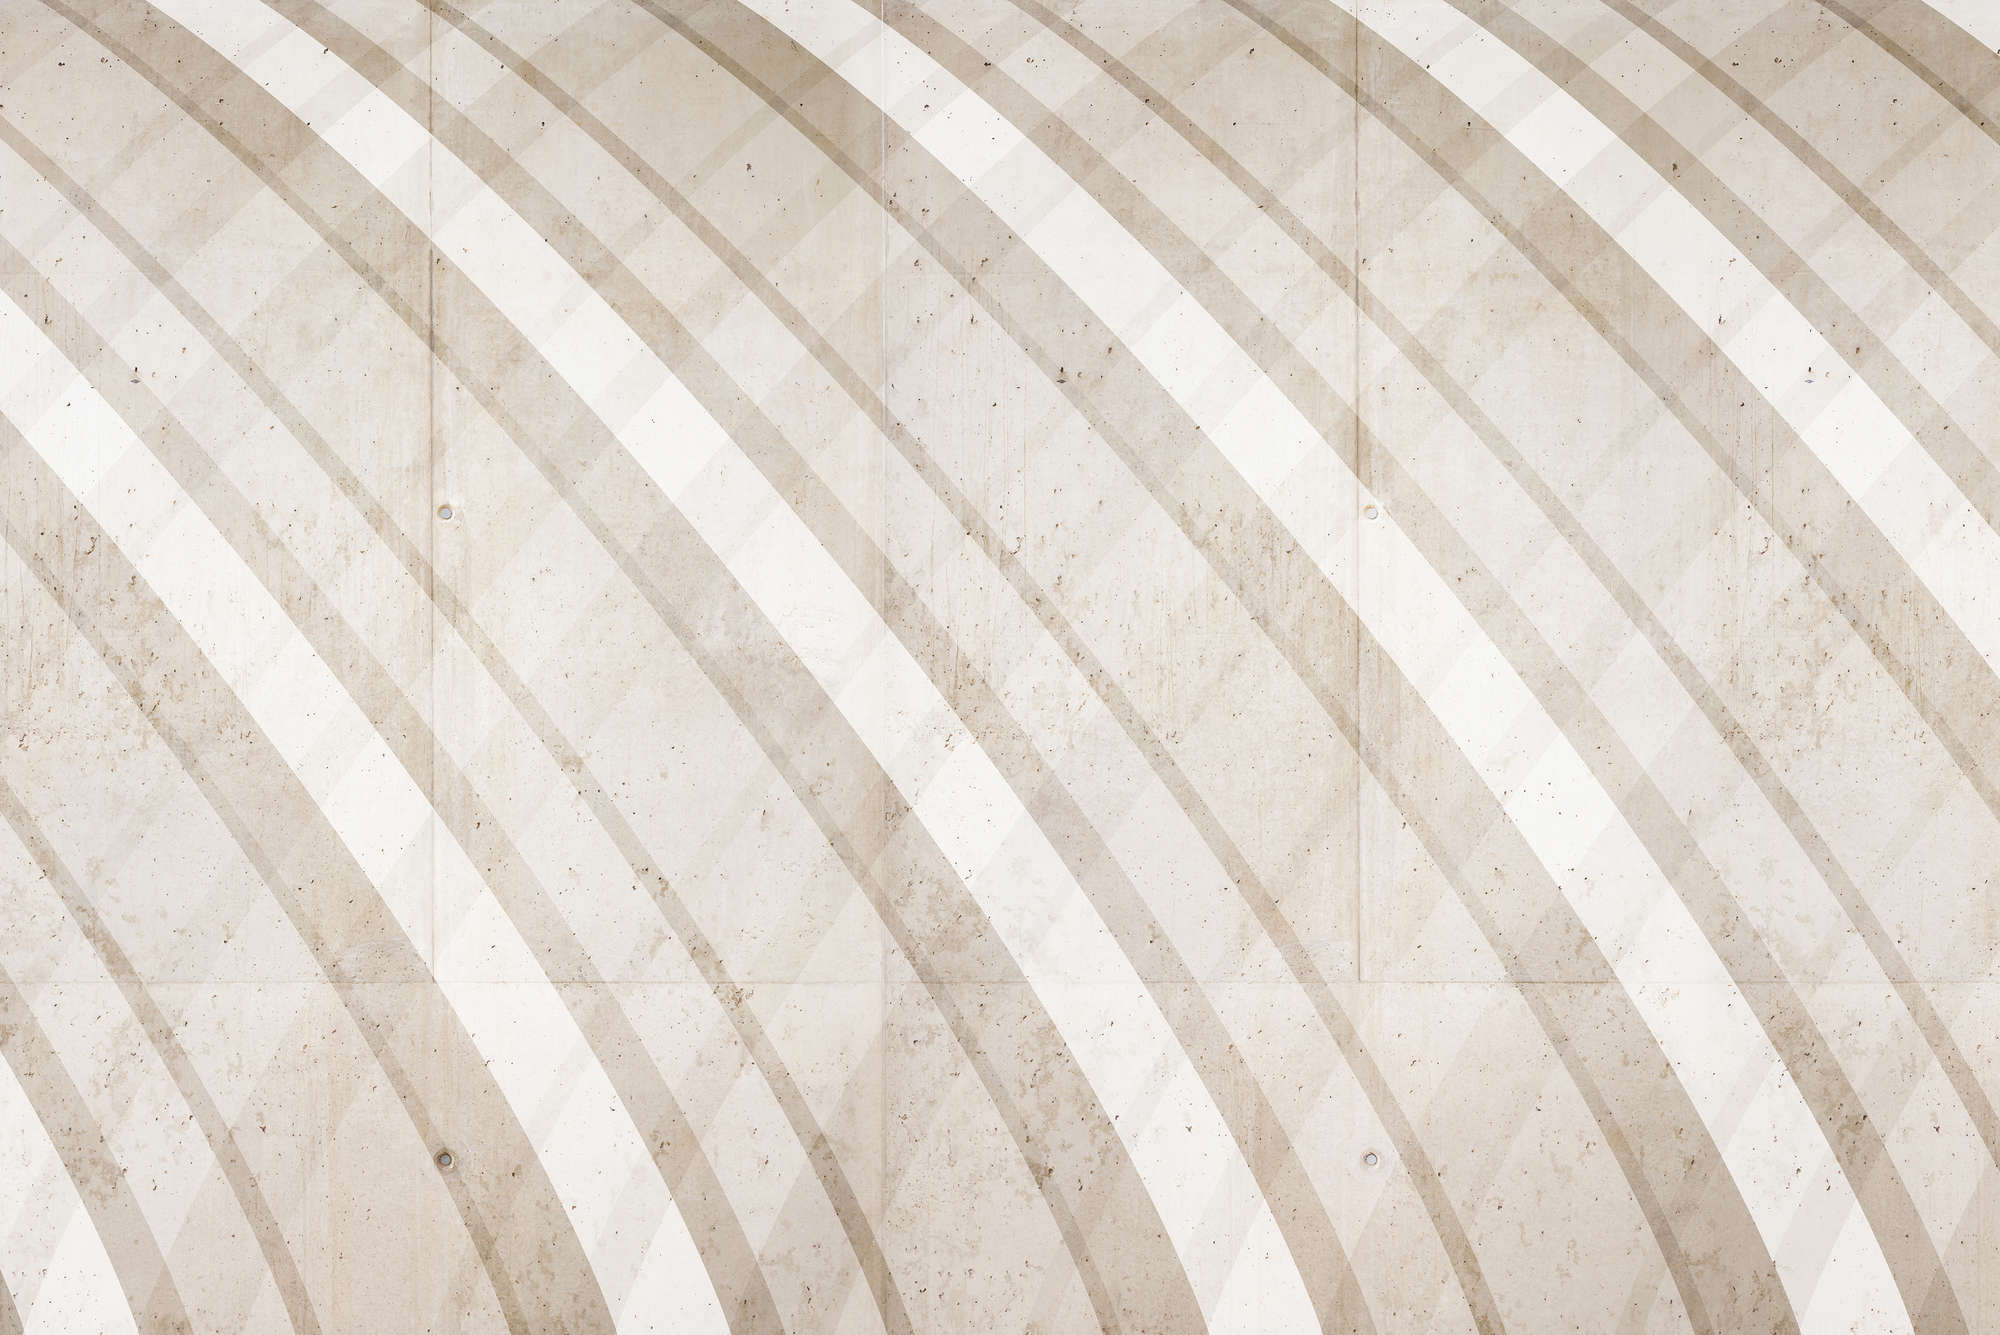             Papier peint graphique à rayures rondes beige sur intissé structuré
        